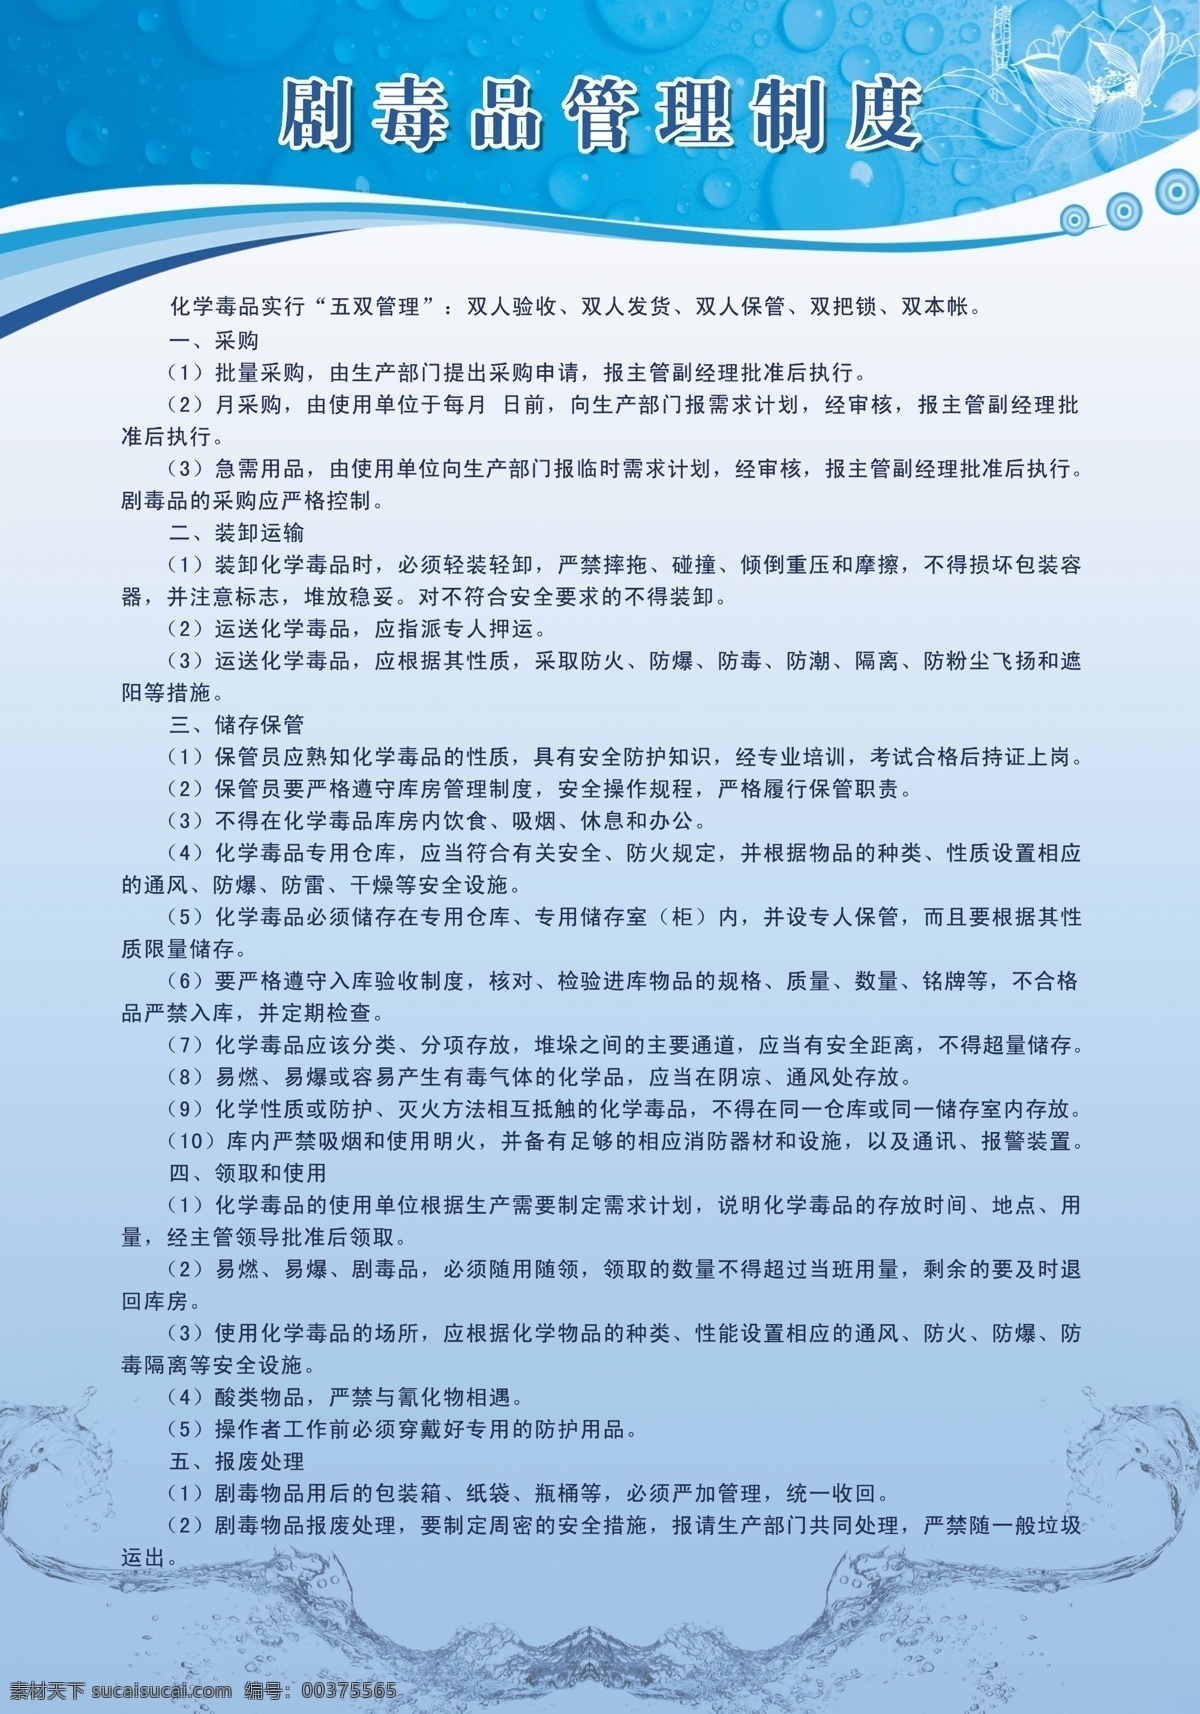 剧毒品 管理制度 中文字 花朵 花纹 花纹效果 水珠 蓝色渐变背景